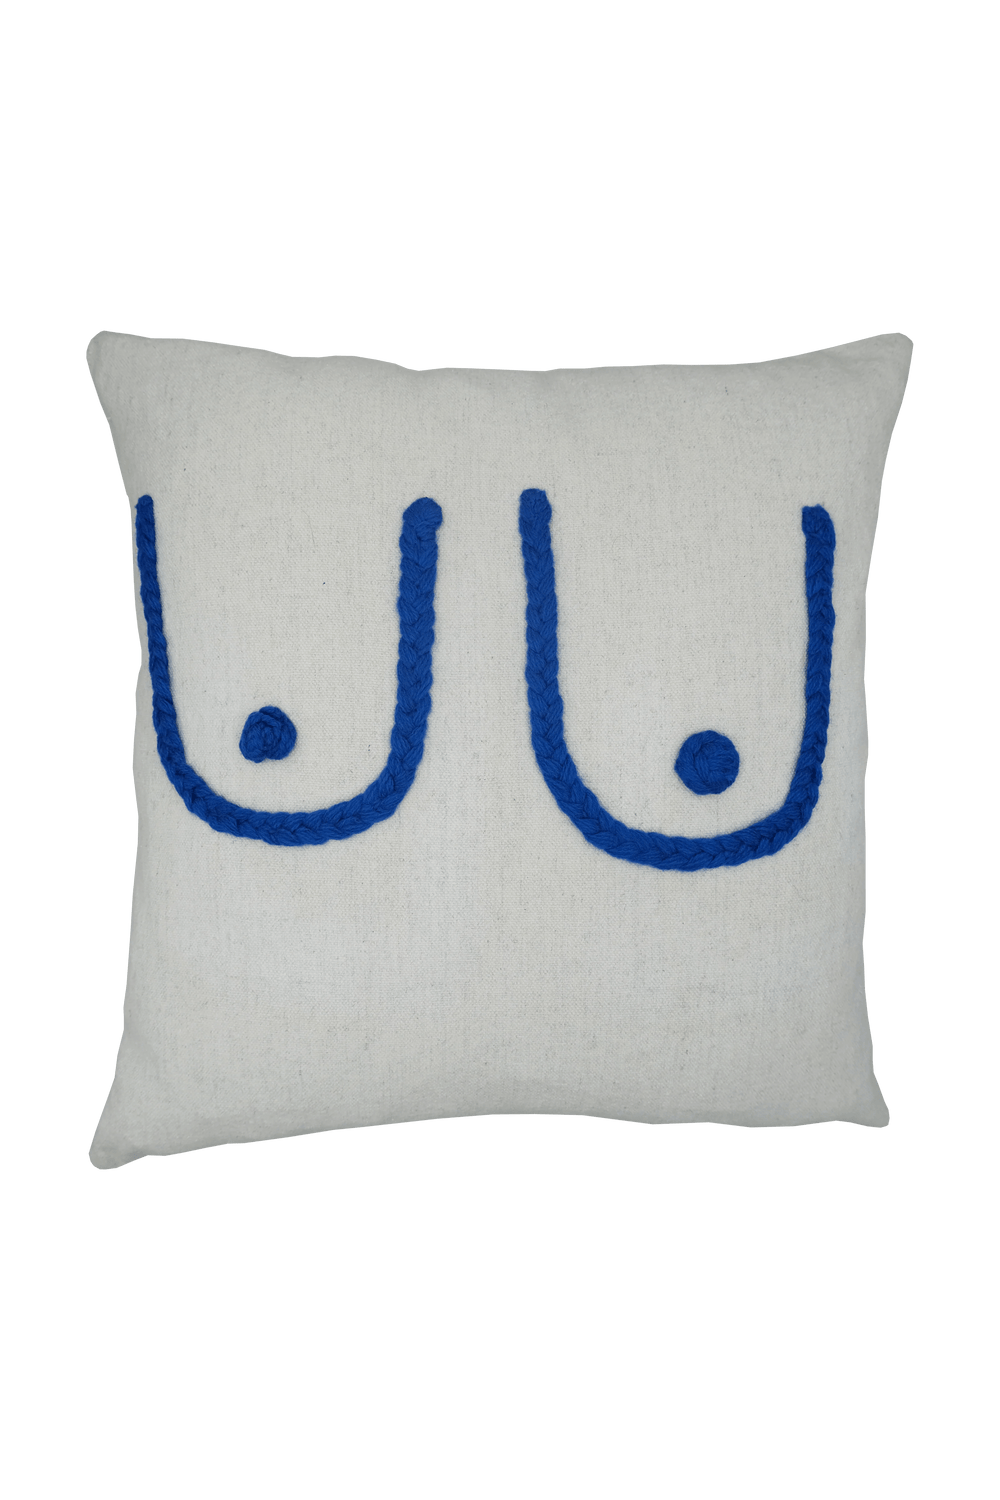 Blue Boob Cushion